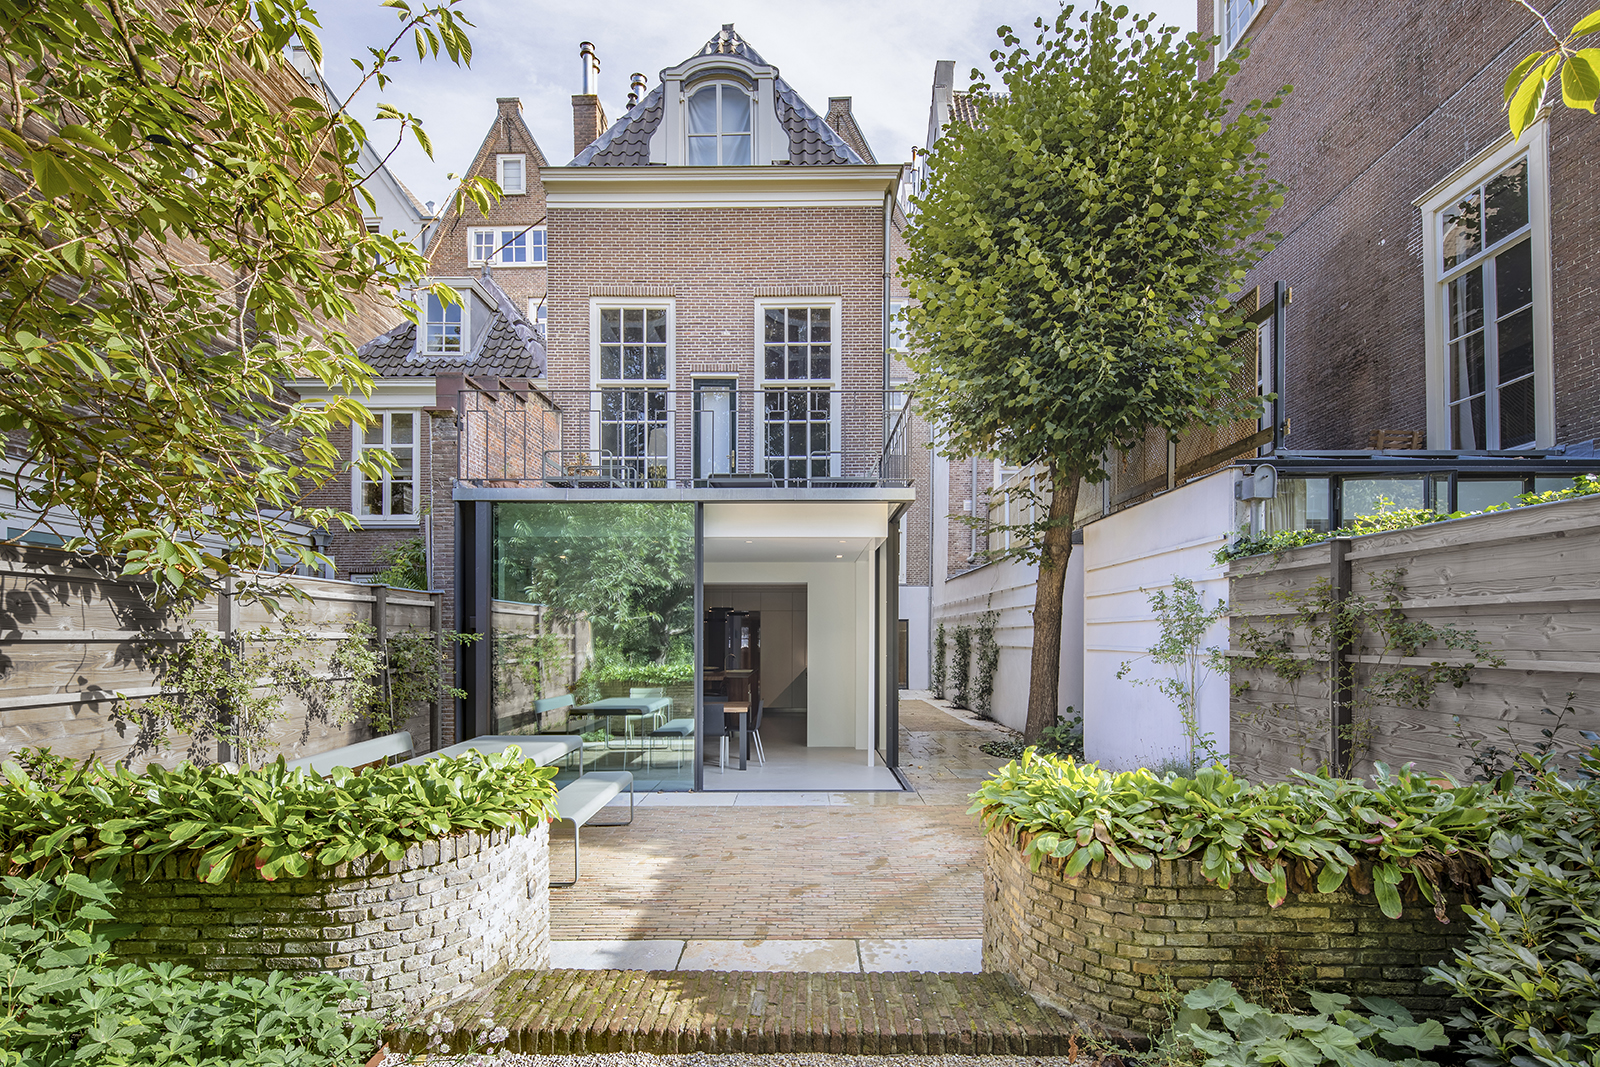 https://www.heyligersarchitects.nl/wp-content/uploads/2021/10/Heyligers_interieur_woonhuis_grachtenpand_architect_WoutervanderSar_canalhouse-01.jpg